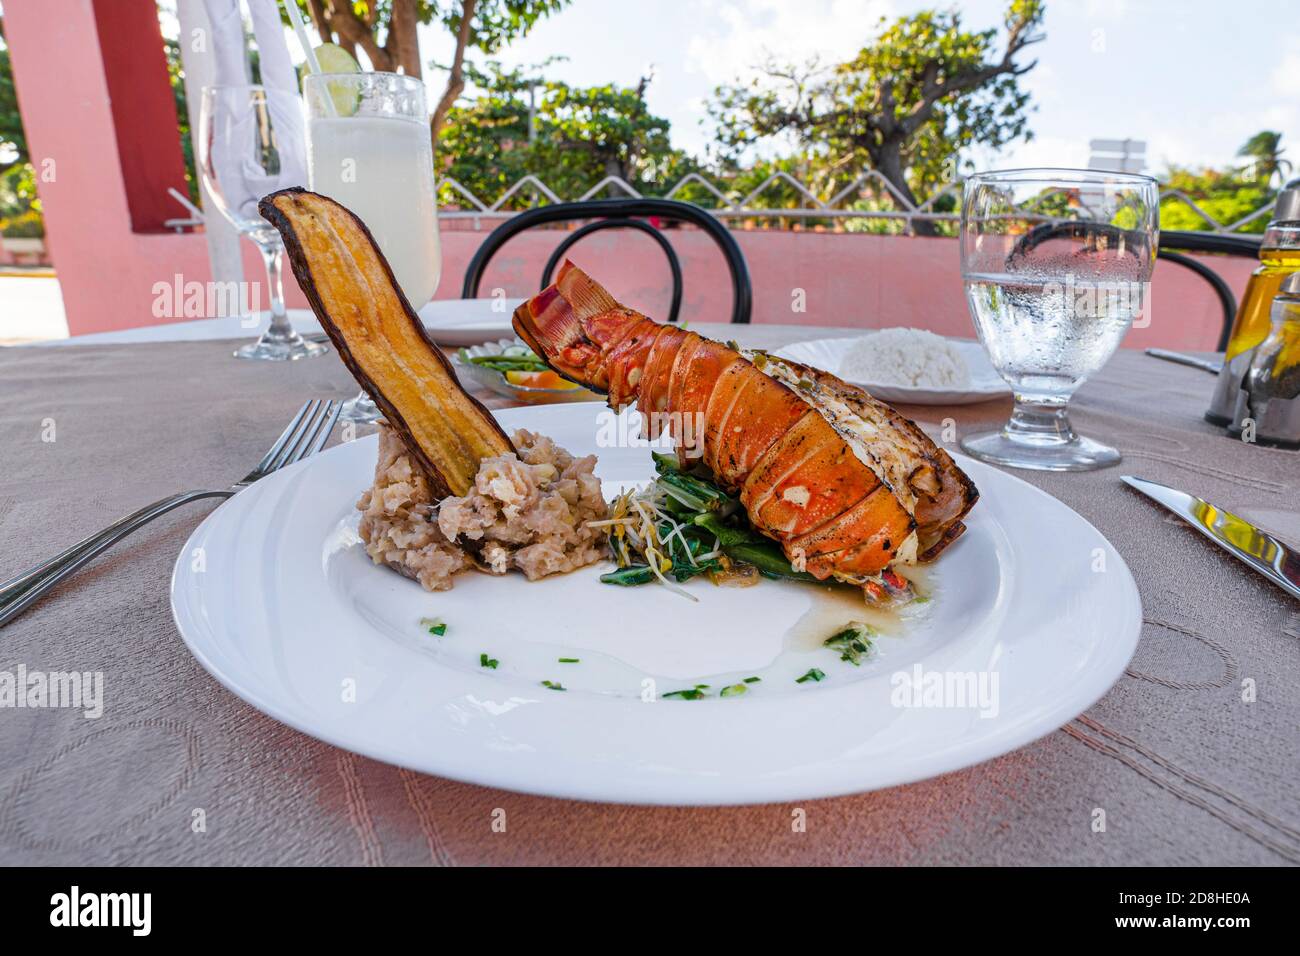 Le homard grillé est magnifiquement placé sur une assiette avec un accompagnement de purée de pommes de terre, de banane frite, de légumes, de riz et un verre de cocktail Banque D'Images